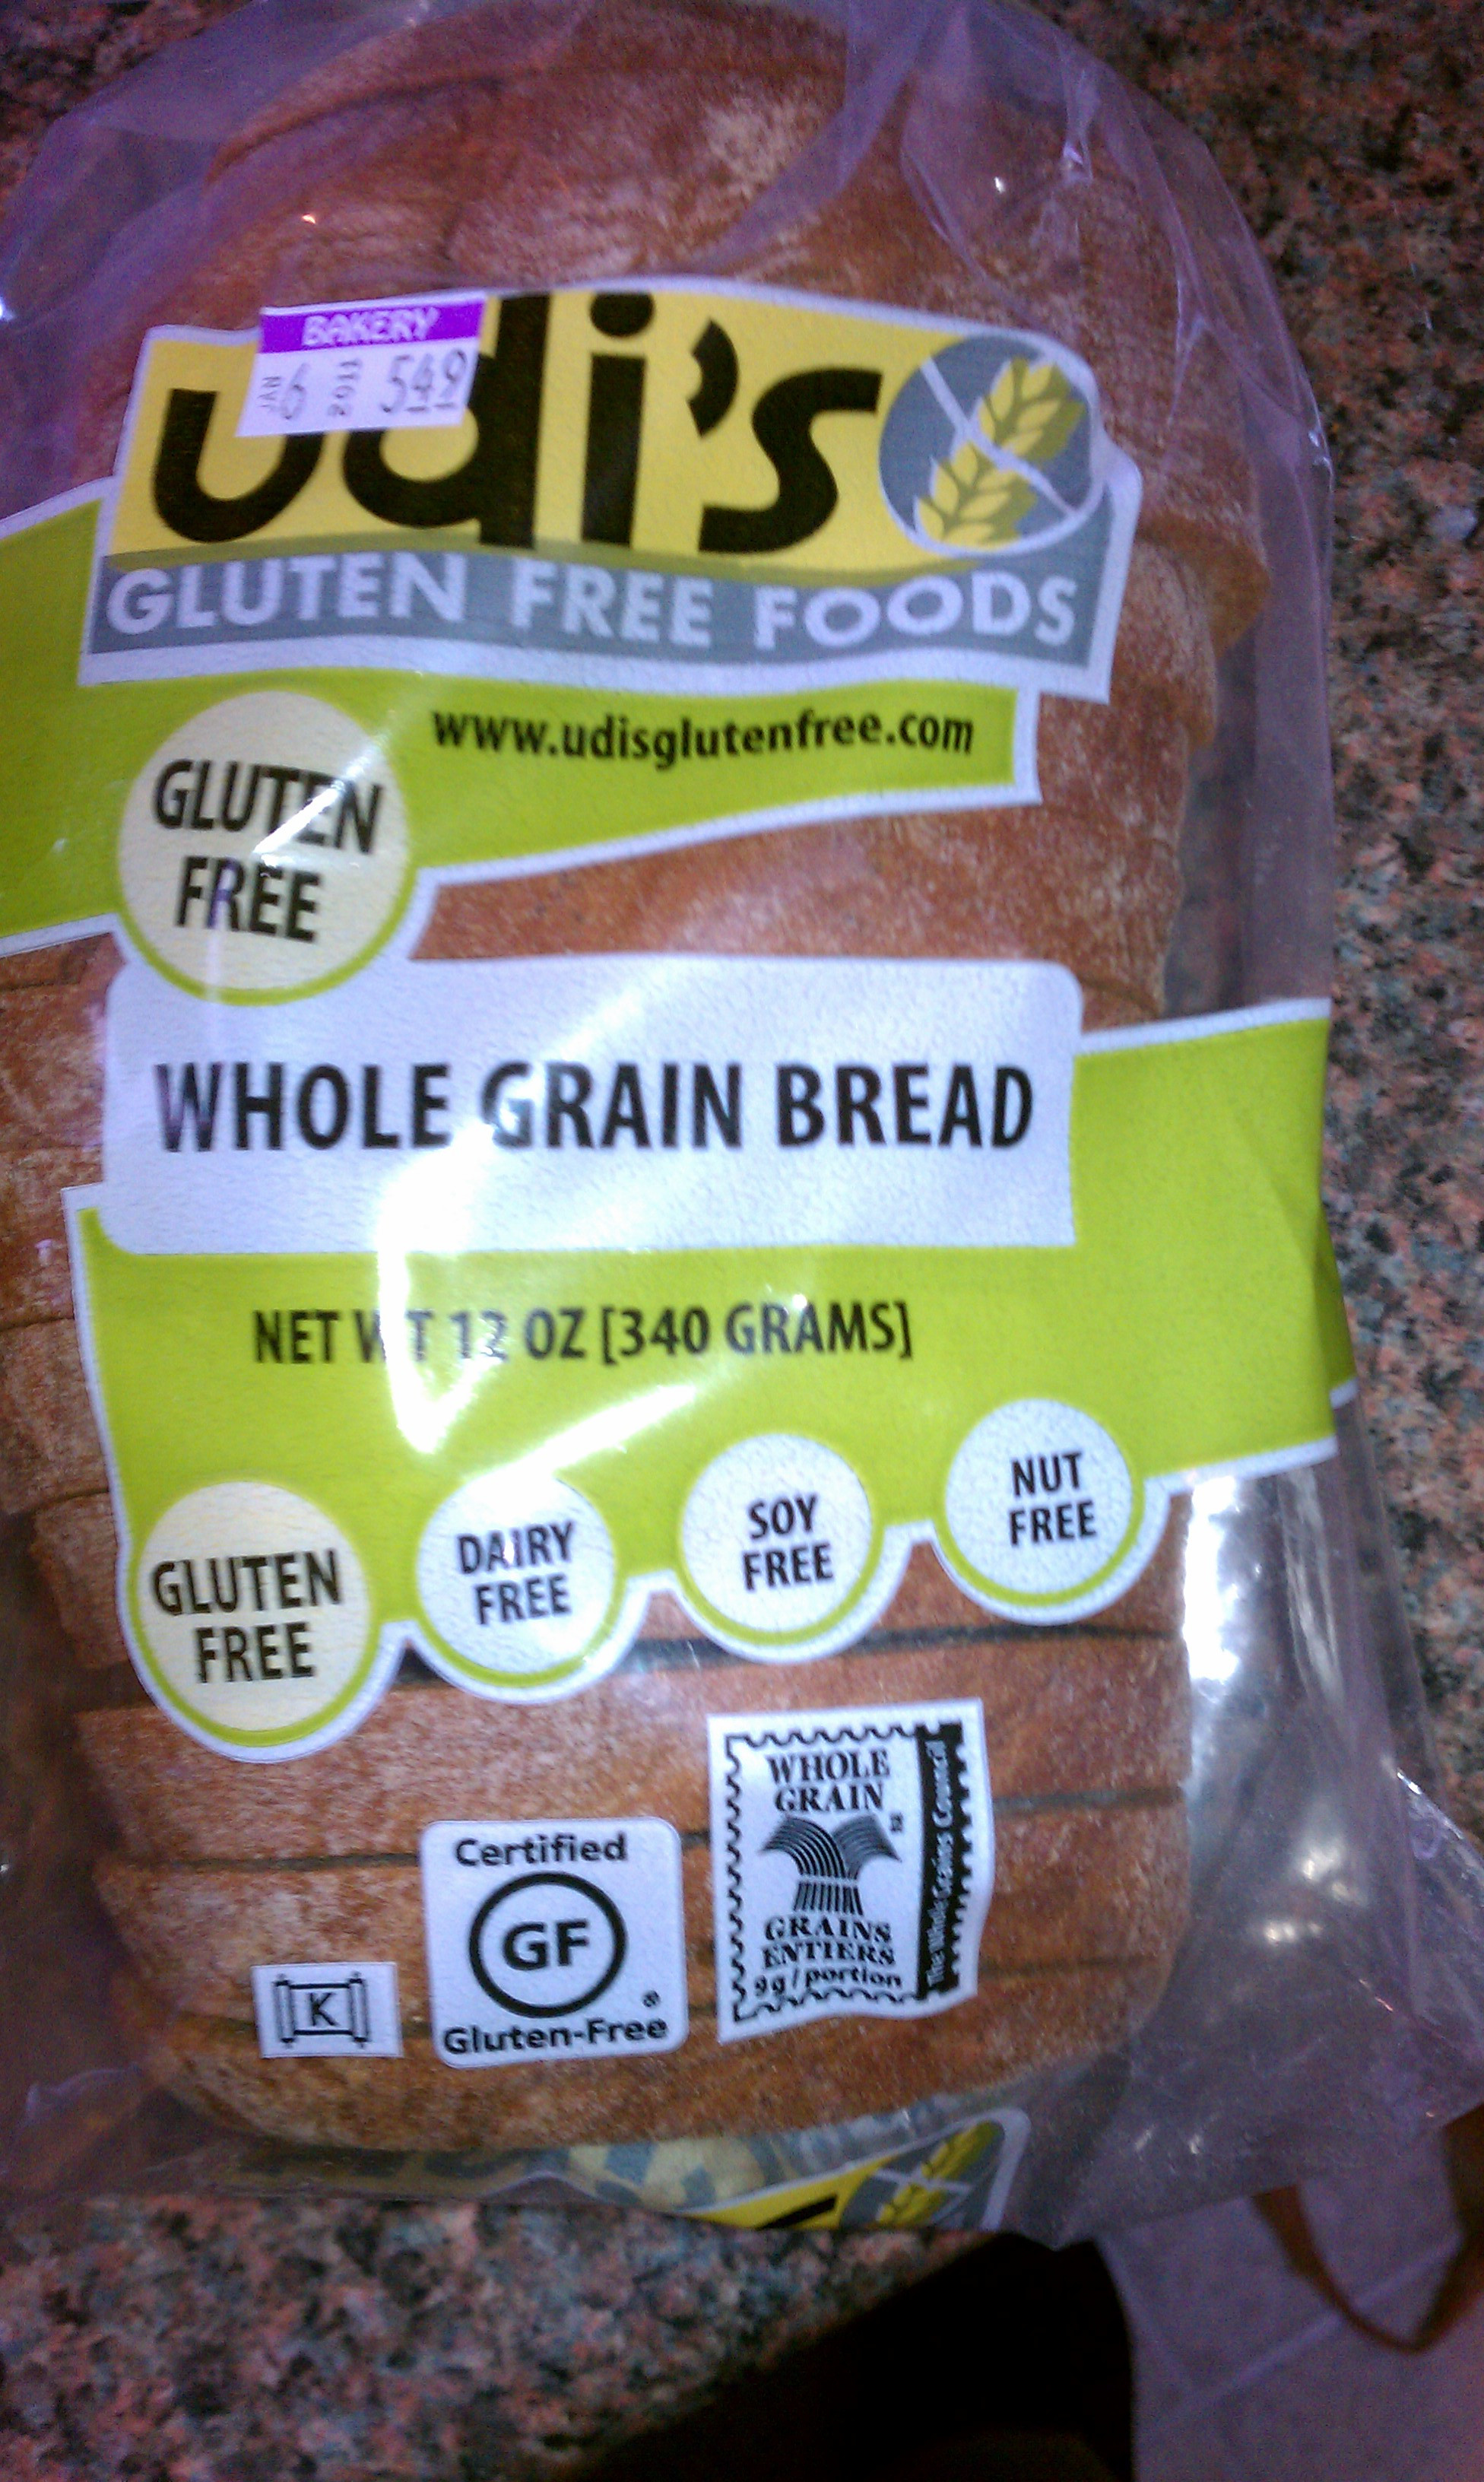 Gluten Free Bread At Kroger
 Udi’s Bread at Kroger